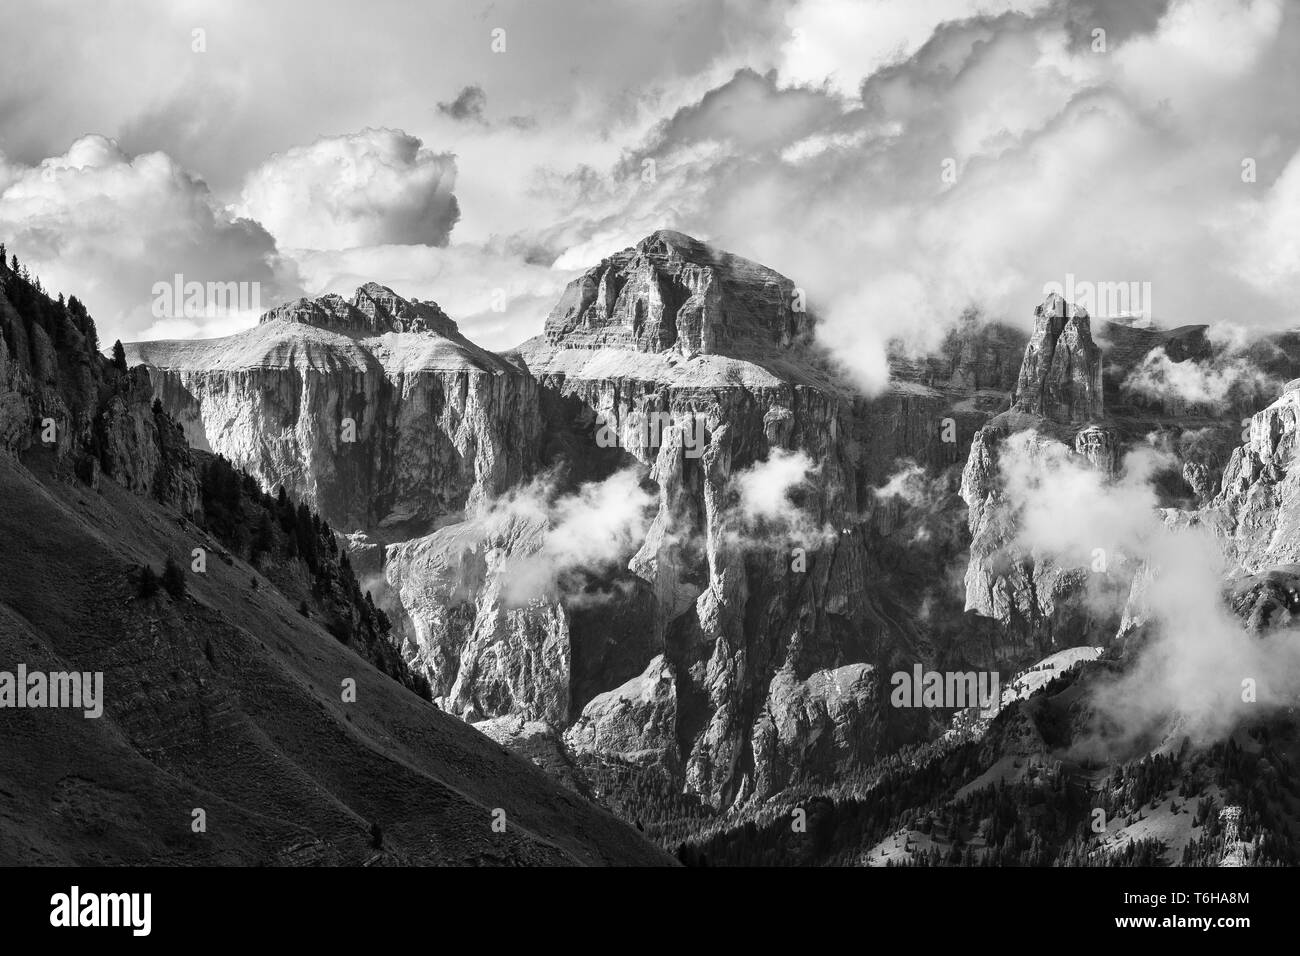 The Sella mountain group, Piz Ciavazes peak. The Gardena Dolomites. Italian Alps. Europe. Black white fine art landscape. Stock Photo